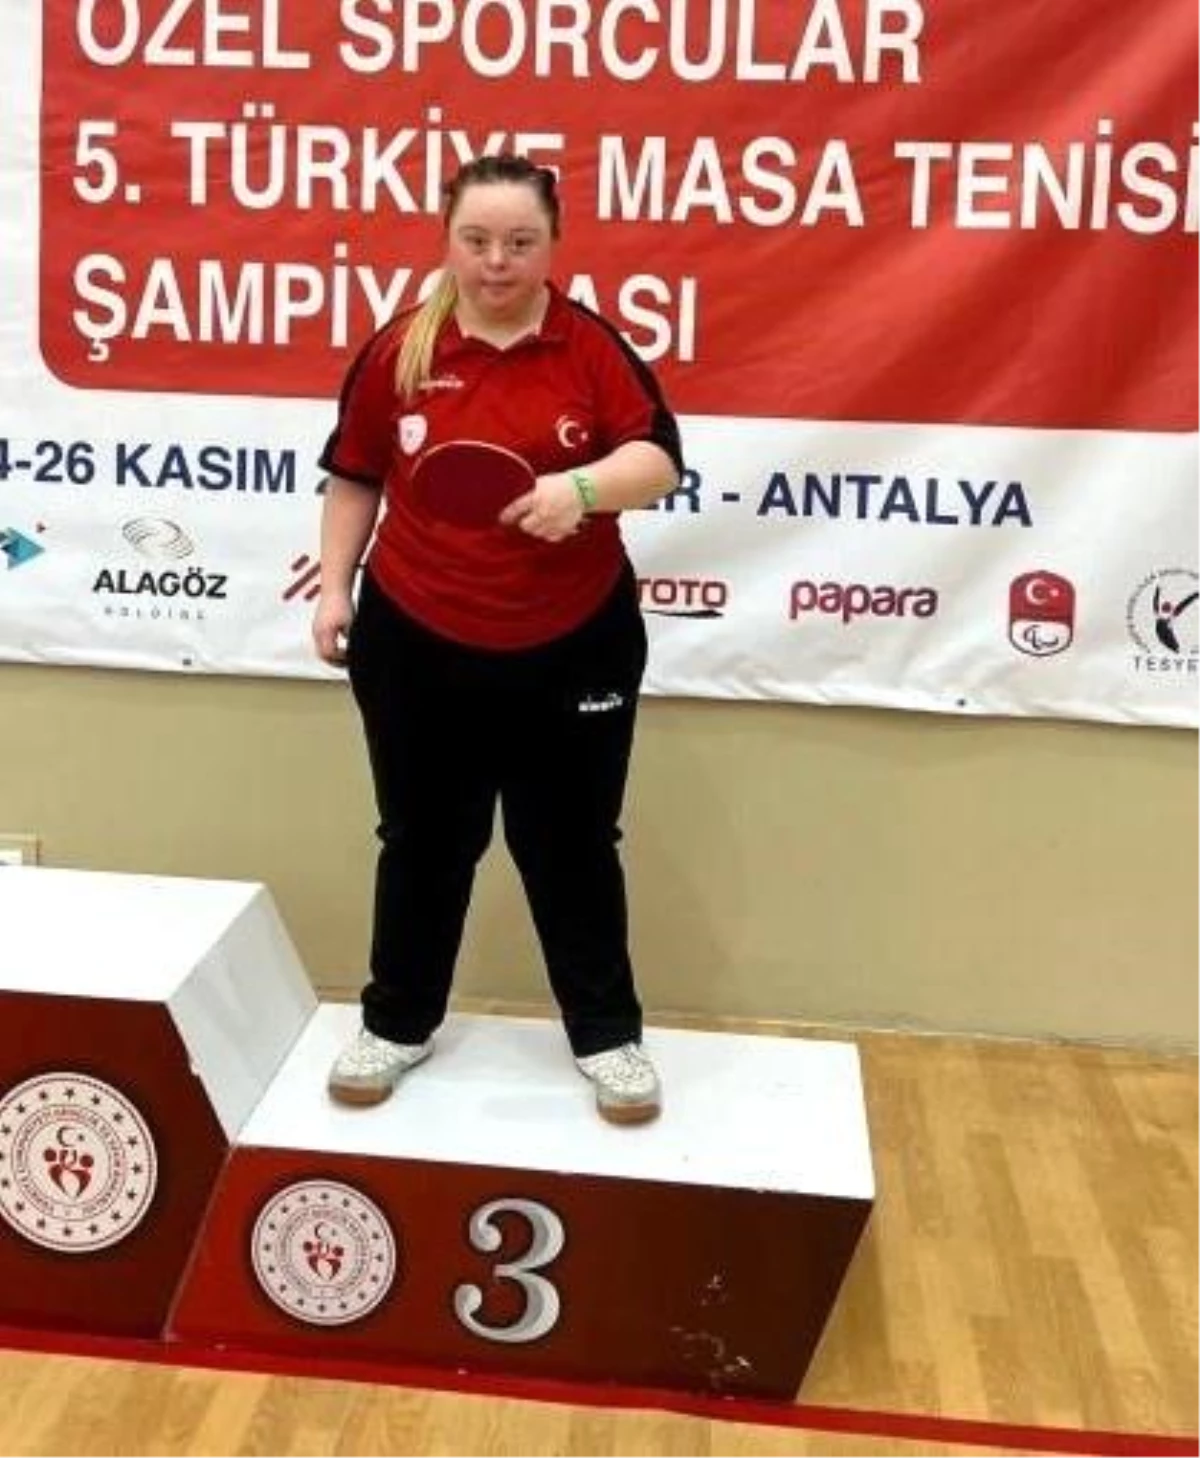 Bilecikli özel sporcu Zeynep Gözgen Türkiye dördüncüsü oldu